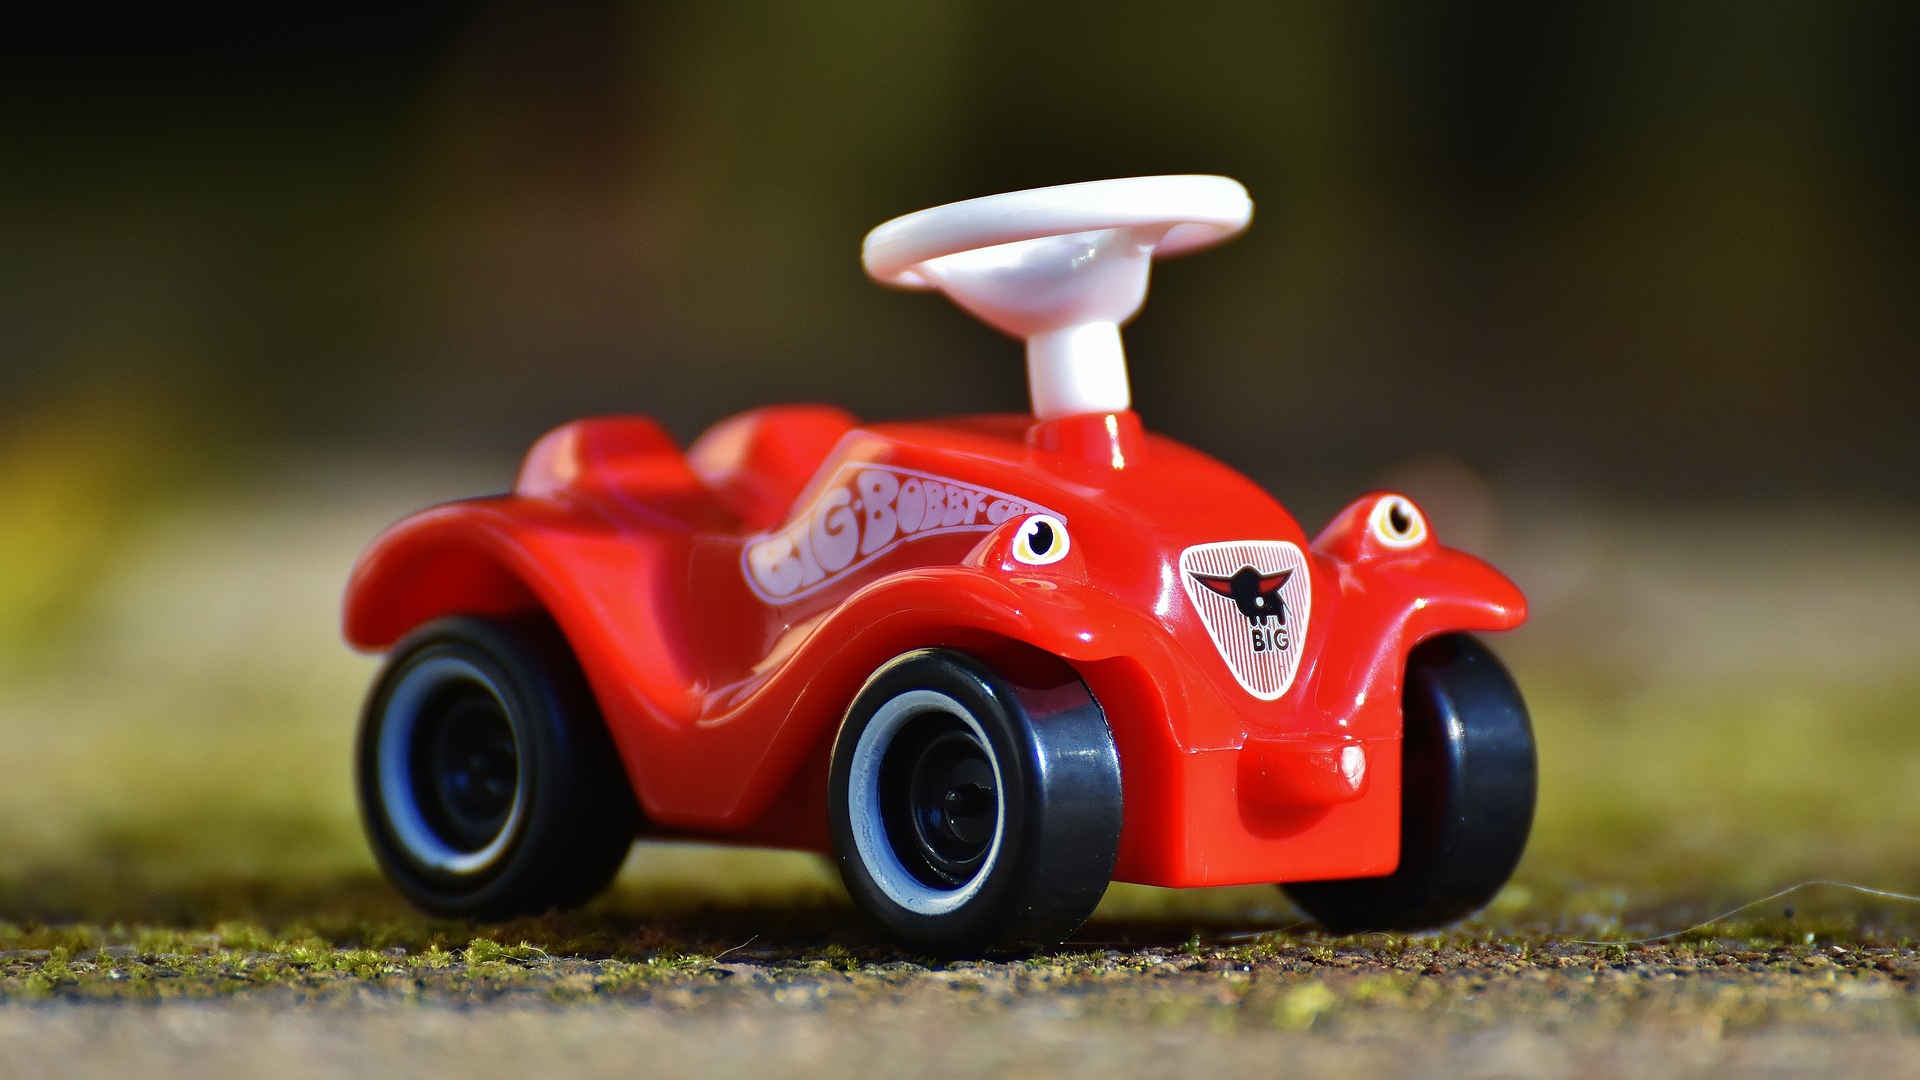 Ein Modell des überall bekannten Rutschautos. Es ist sofort als Bobby Car erkennbar und fast jeder verknüpft die Kindheitserfahrung vom allerersten Autos damit.